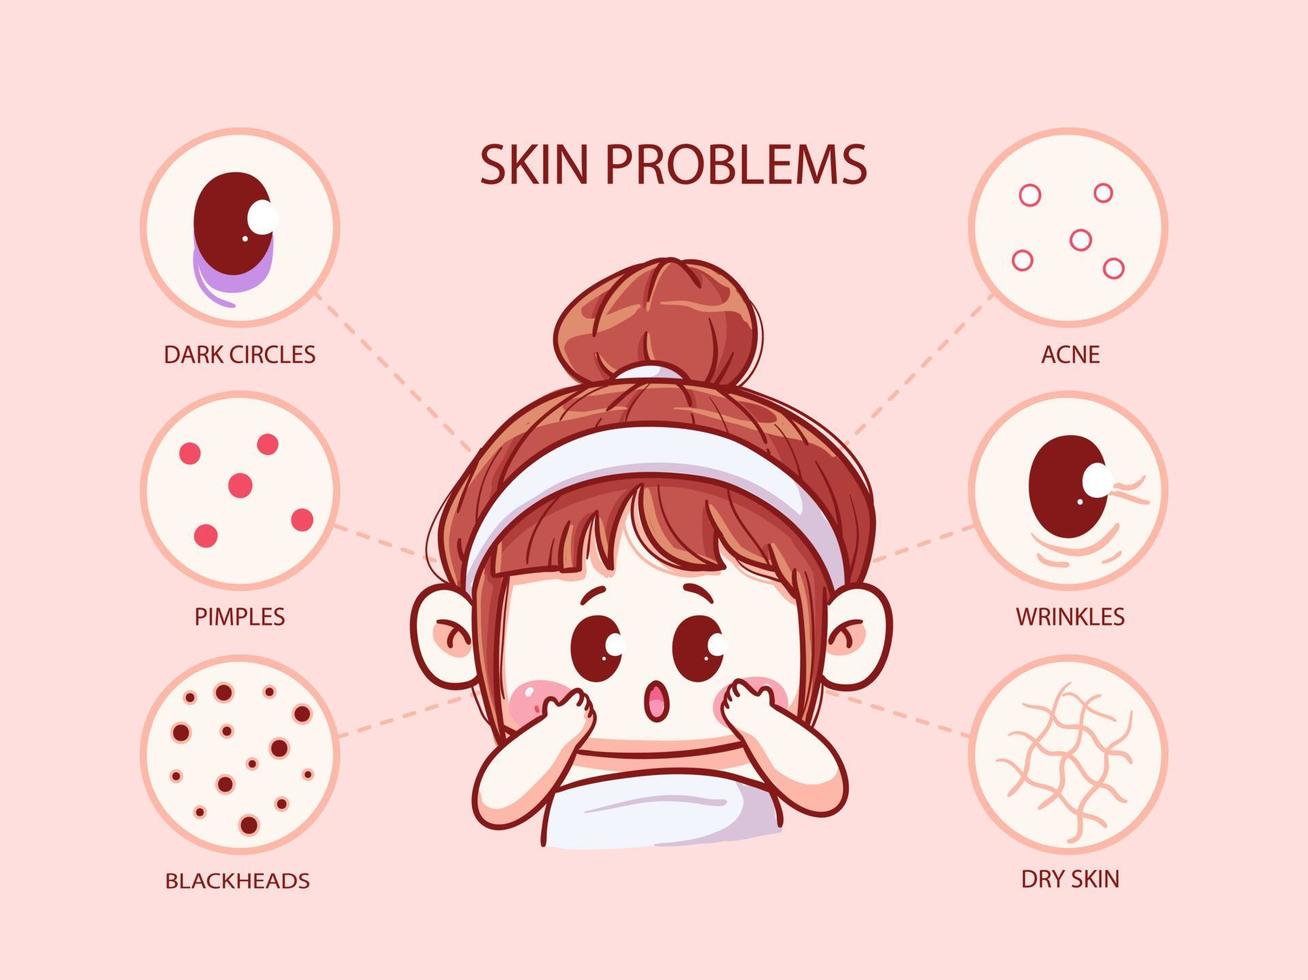 schattig en kawaii meisje met huidproblemen, donkere kringen, acne, puistjes, rimpels, mee-eters, droge huid, manga chibi illustratie vector